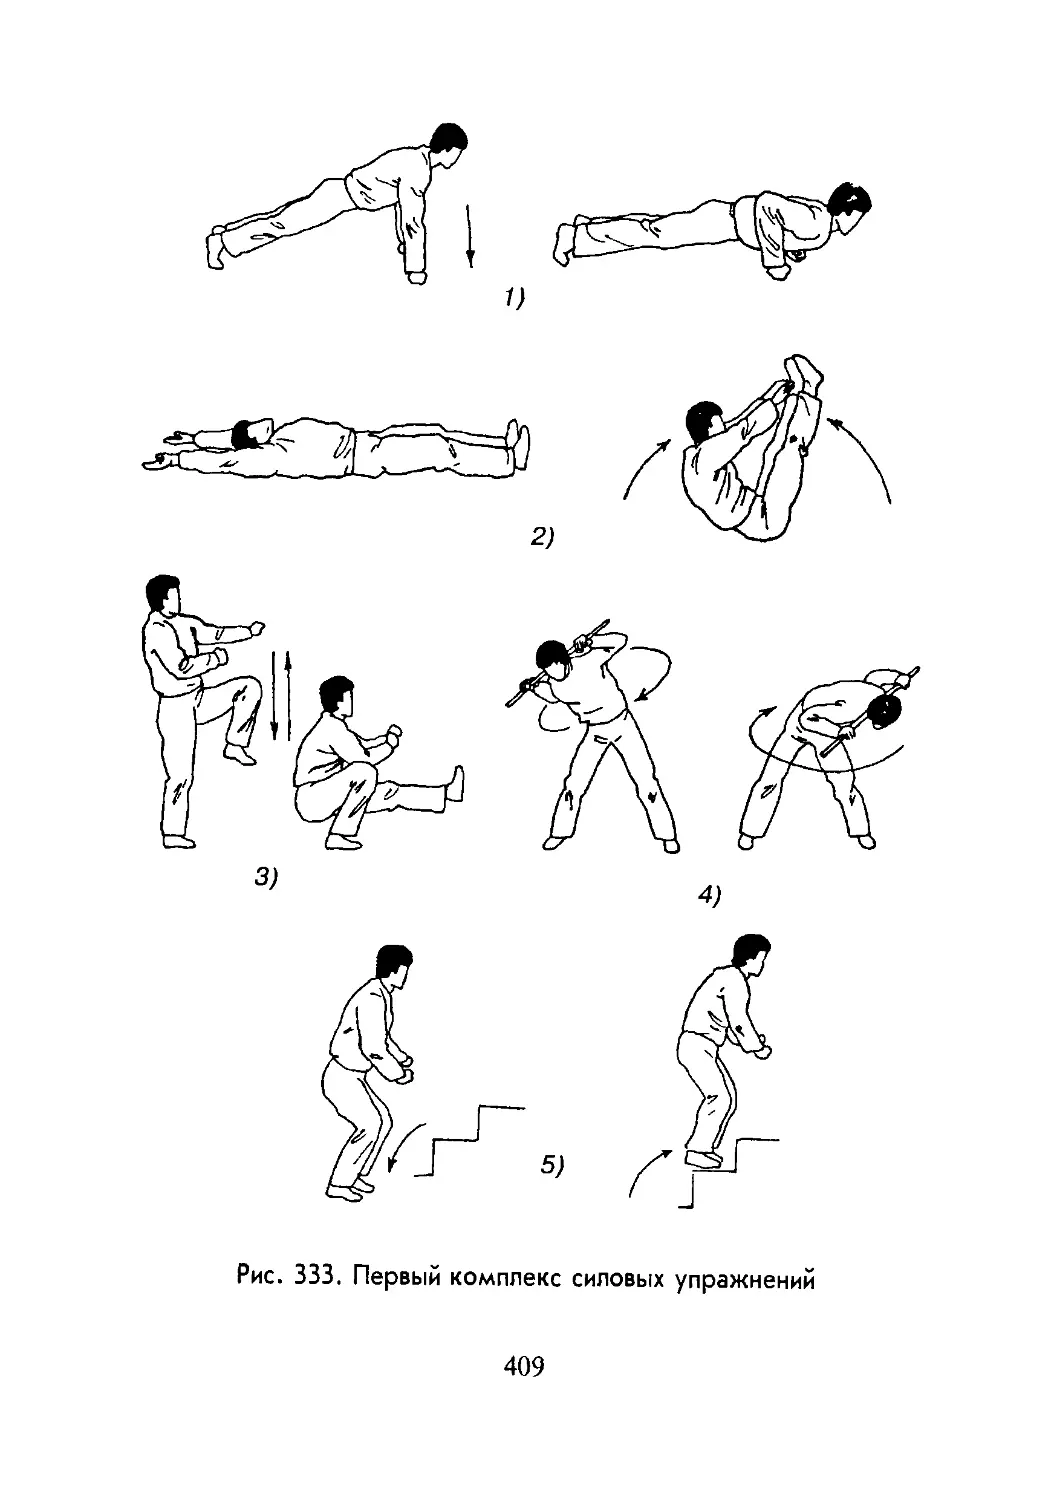 5 силовых упражнений. Комплекс силовых упражнений. Комплекс силовыхупражнкний. Комплекс силовой тренировки. Силовые упражнения для борцов.